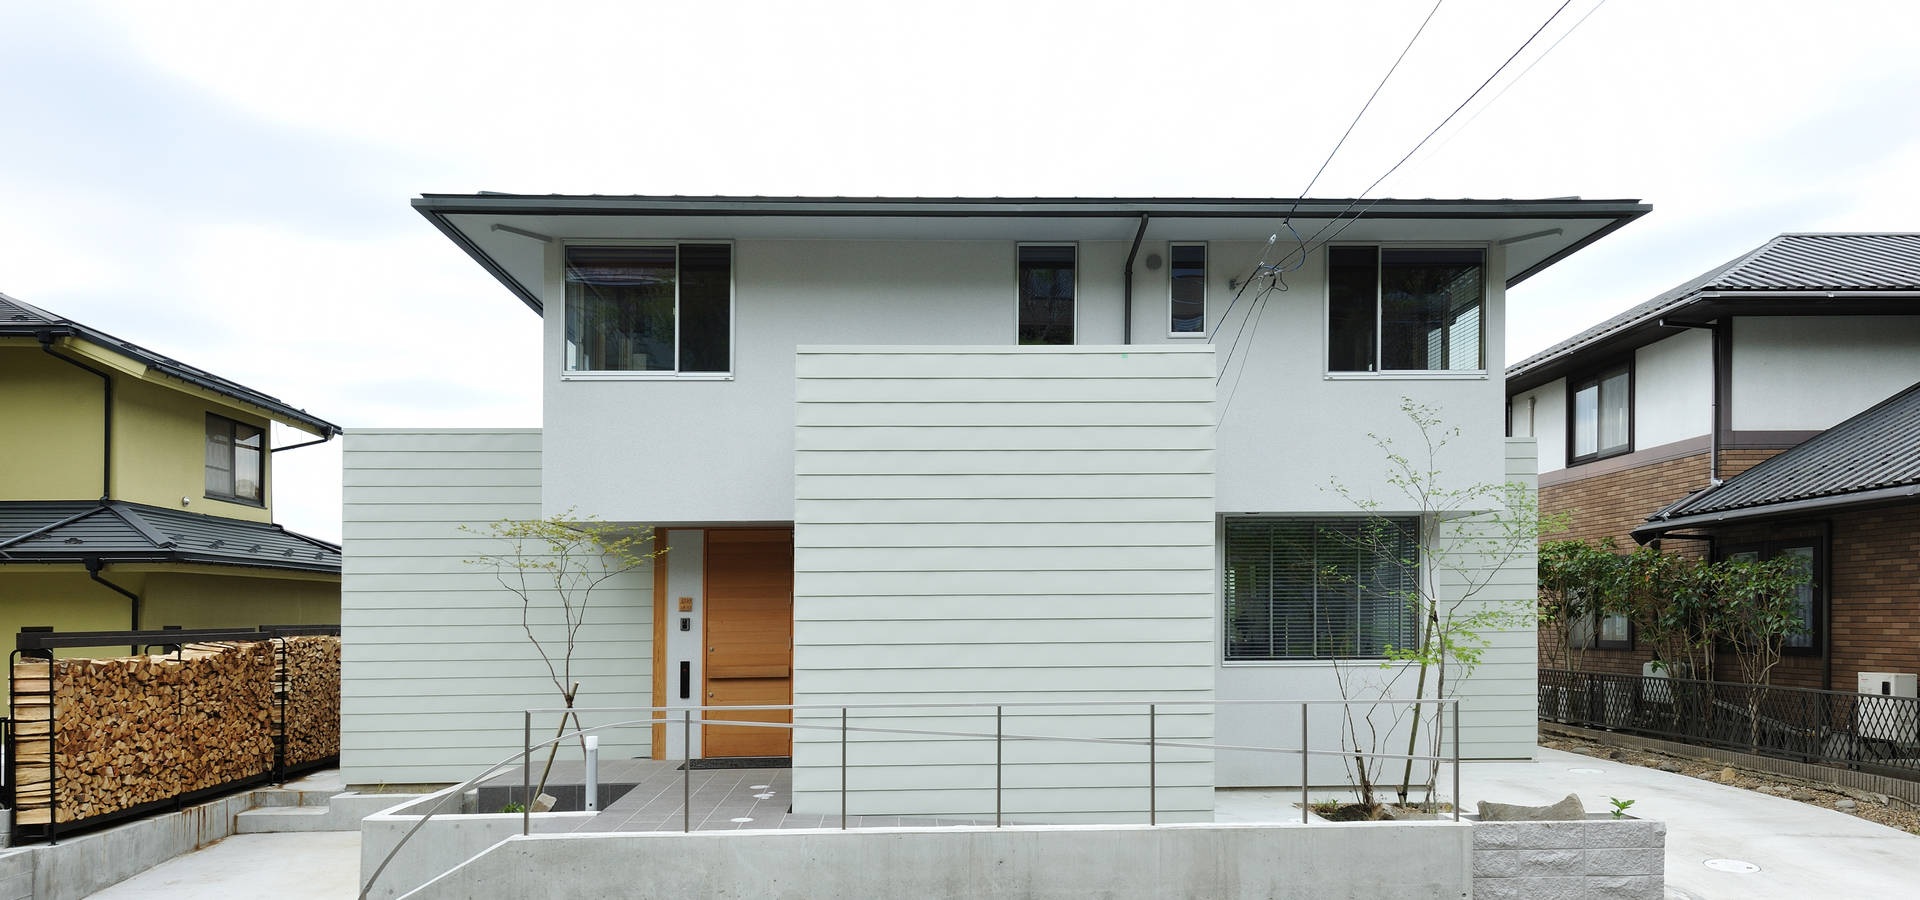 Ishimori Architects